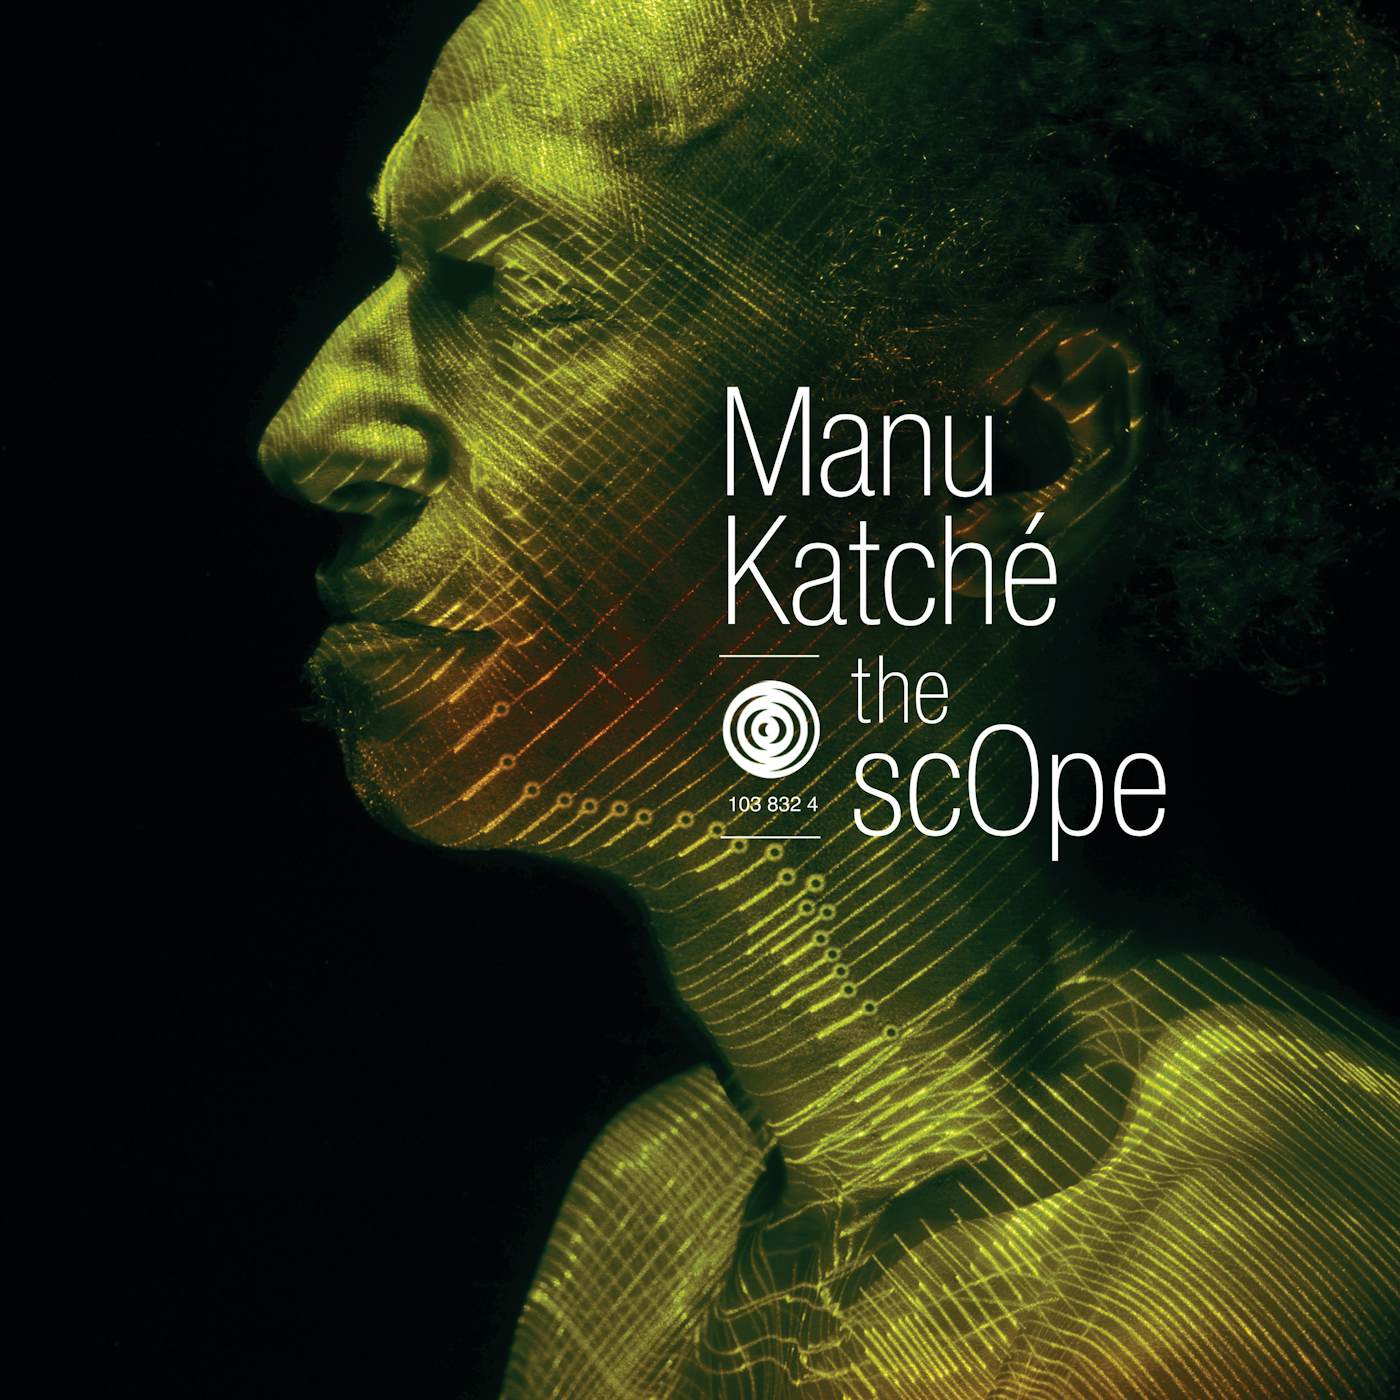 Manu Katche SCOPE CD